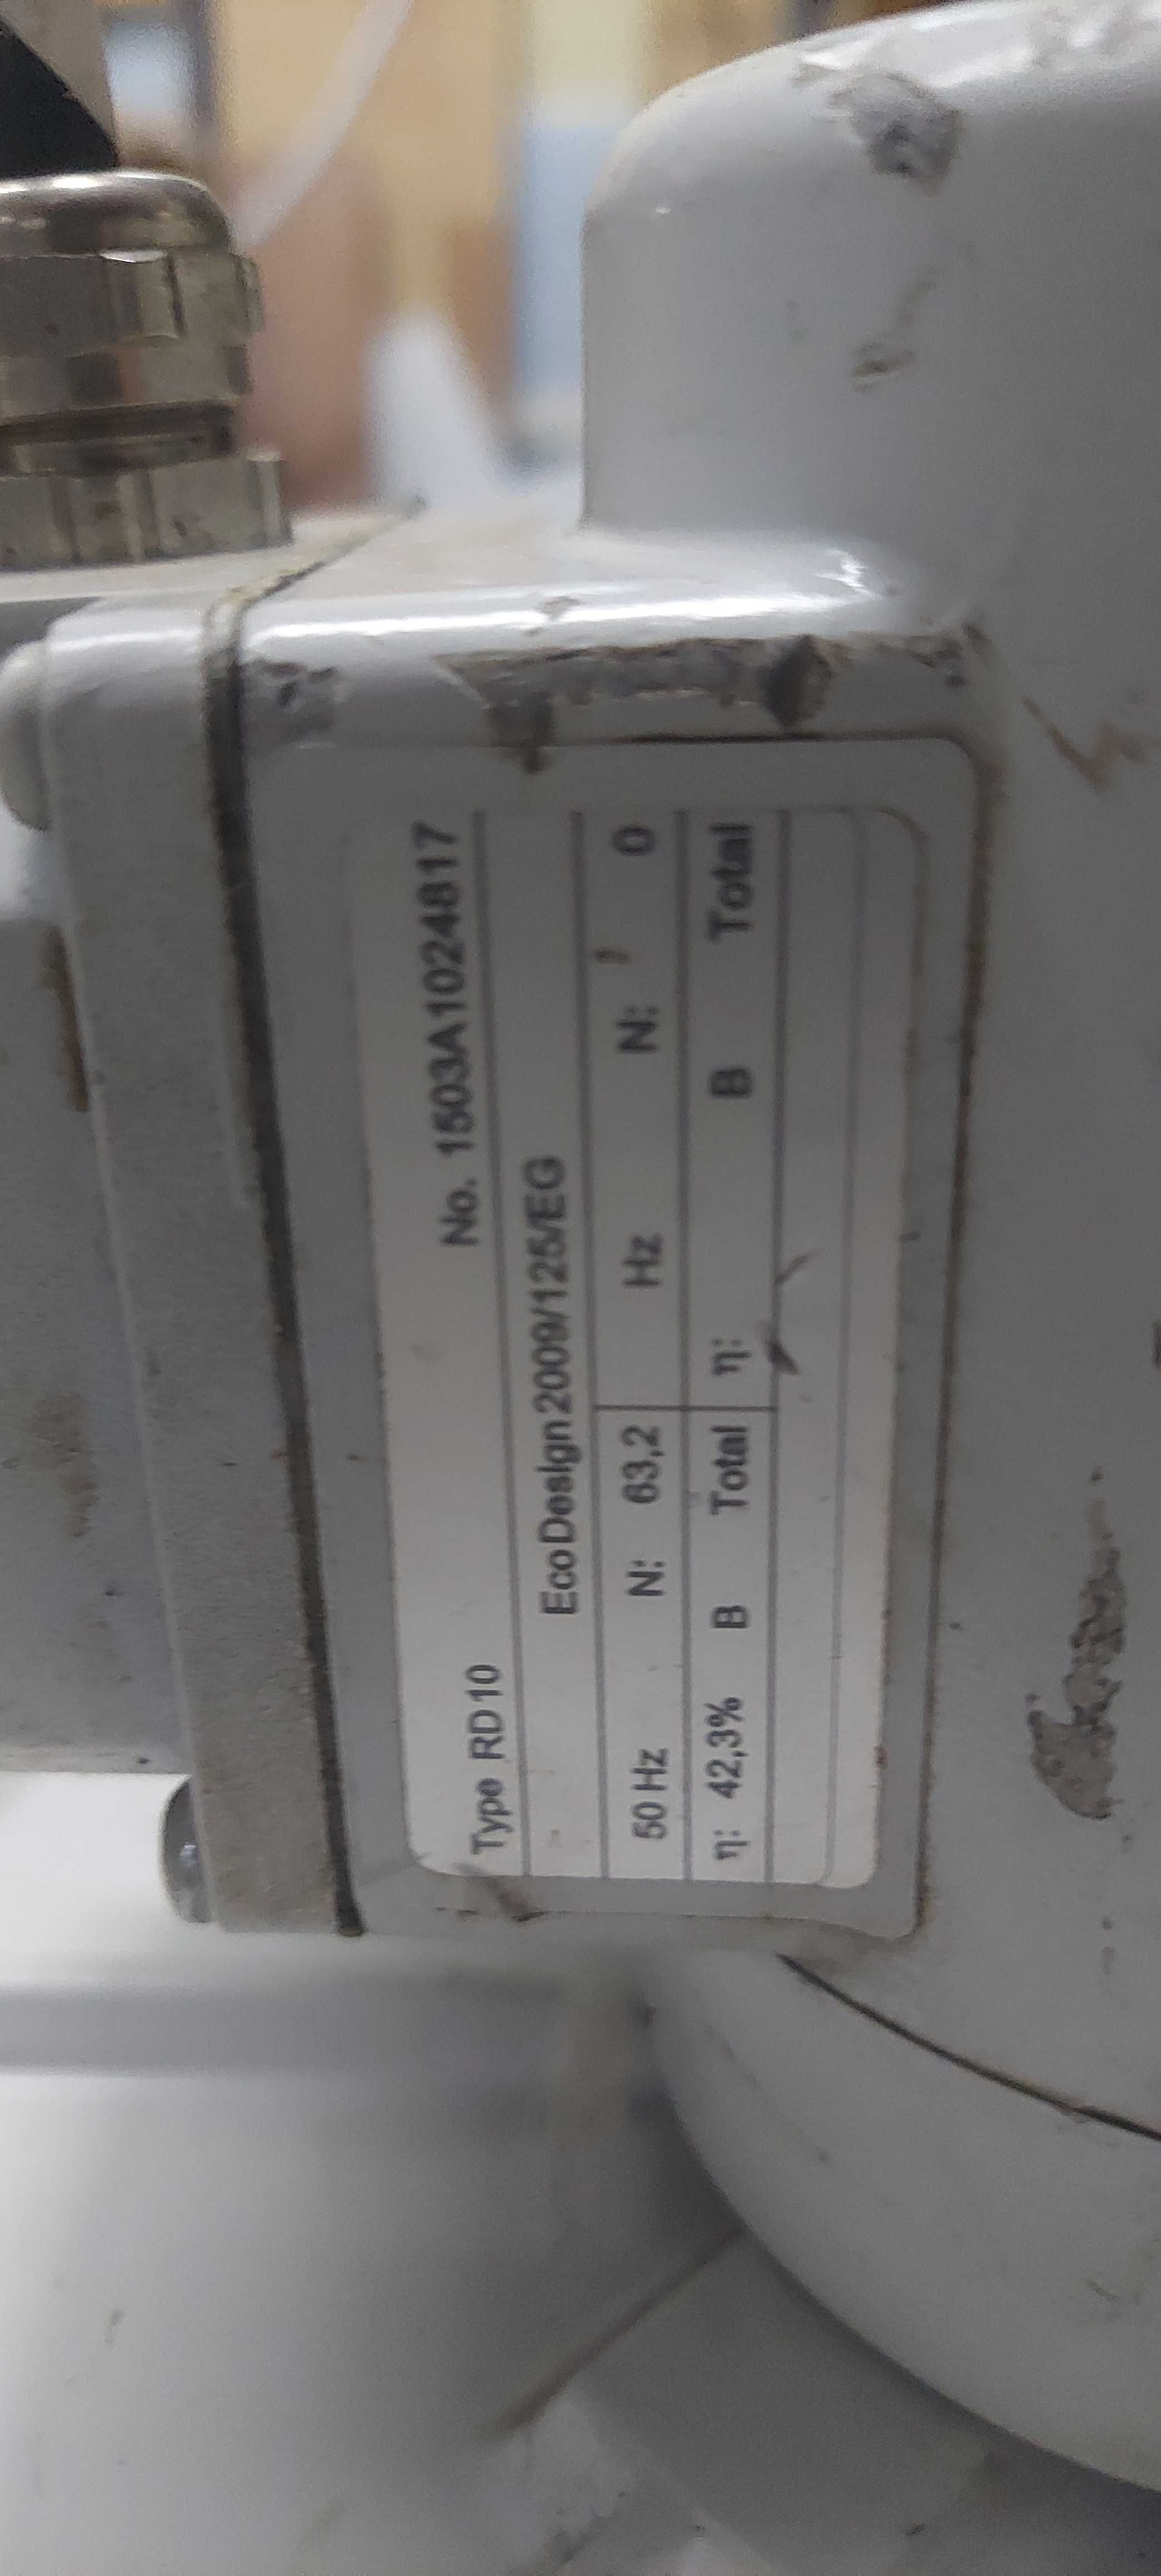 Wentylator dmuchawa ELEKTROR RD10 5M3/MIN silnik 3 fazy 0,075KW odlew